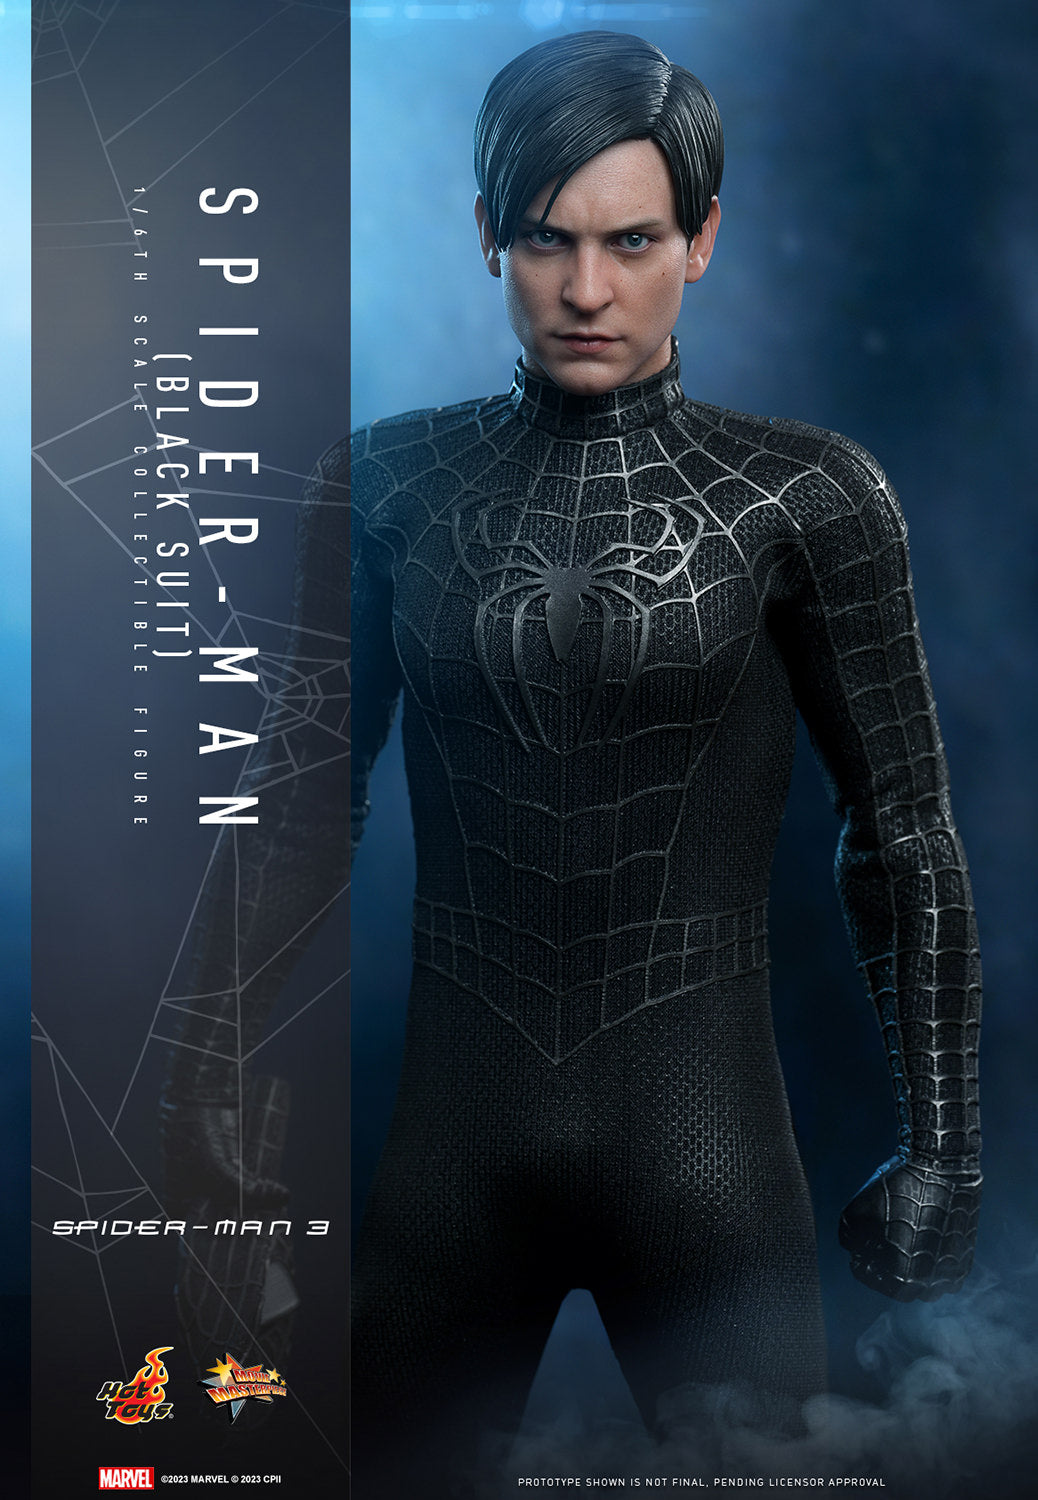 Hot Toys Spider-Man Black Suit *Pre-Order